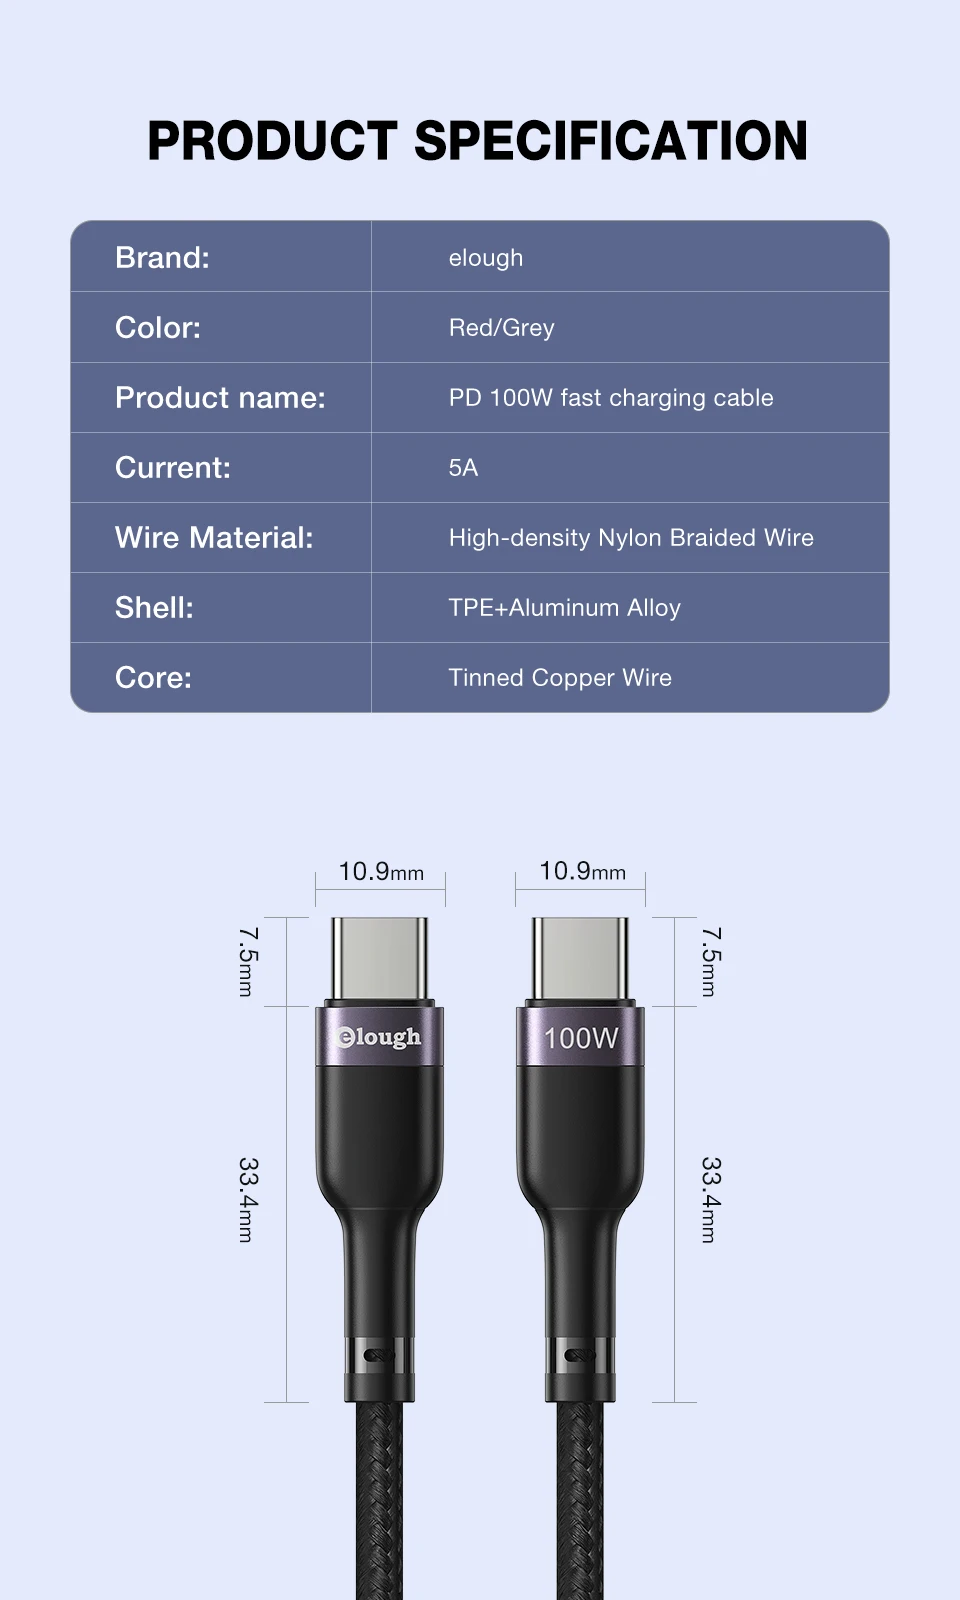 सैमसंग के लिए eLough 100W टाइप सी से टाइप सी केबल फास्ट चार्जिंग चार्जर एंड्रॉइड